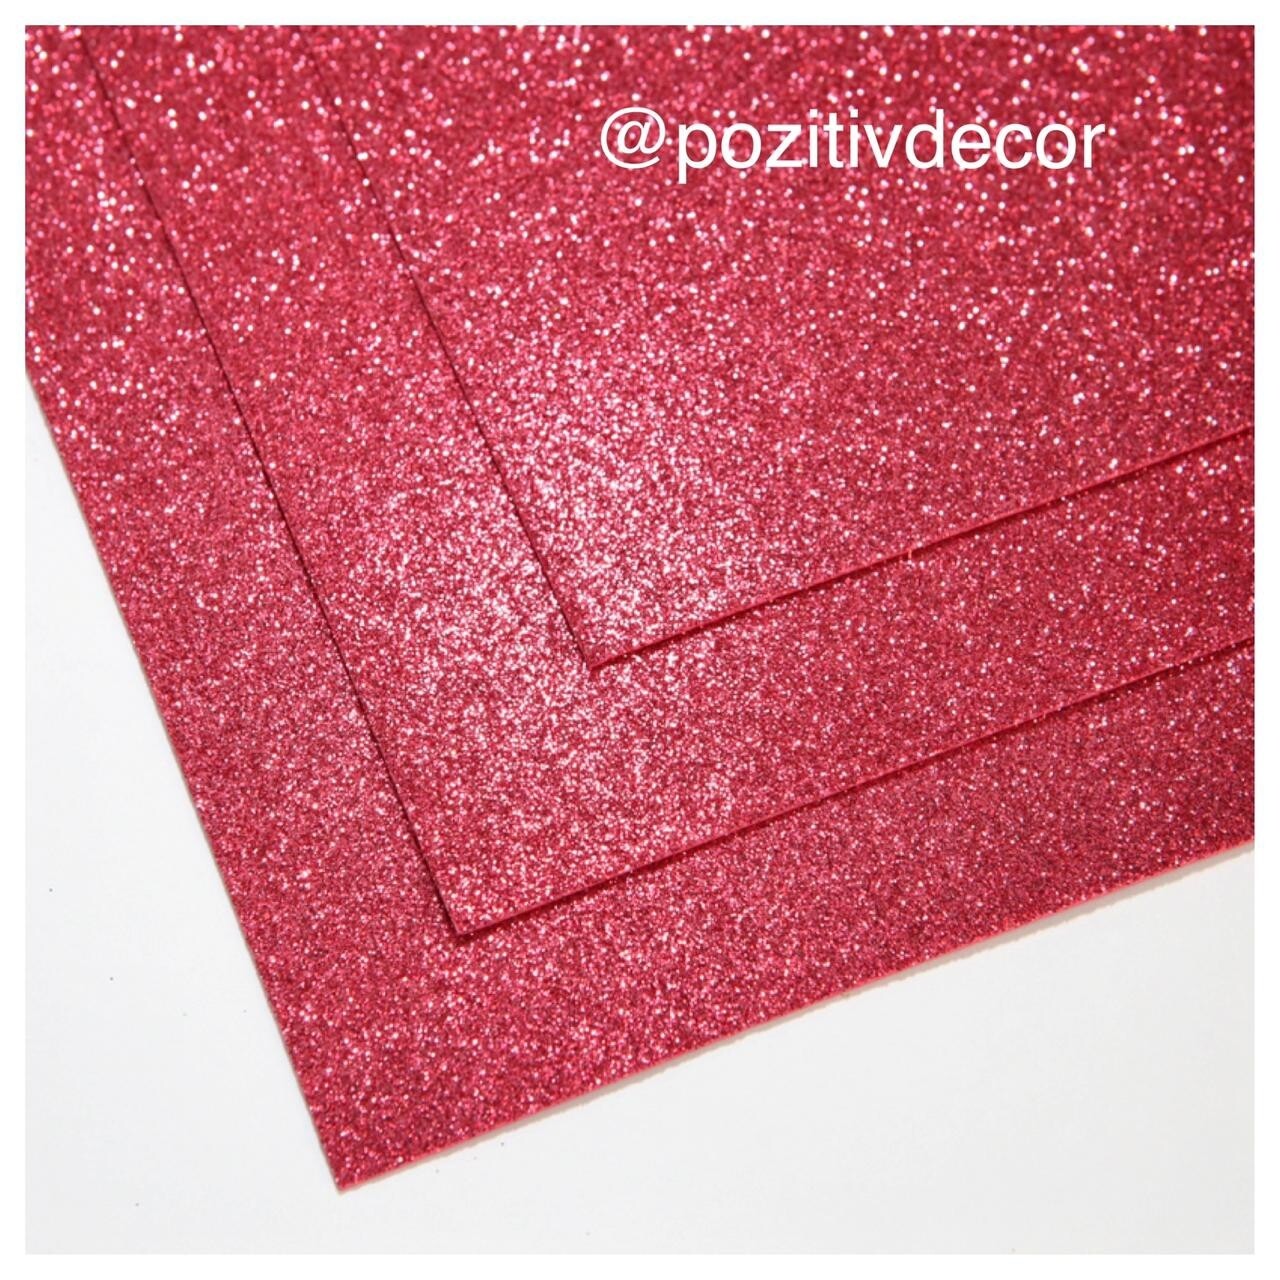 Фоамиран глиттерный - толщина 1,5 мм , размер листа 60/70 см.
Цвет - малиново-красный